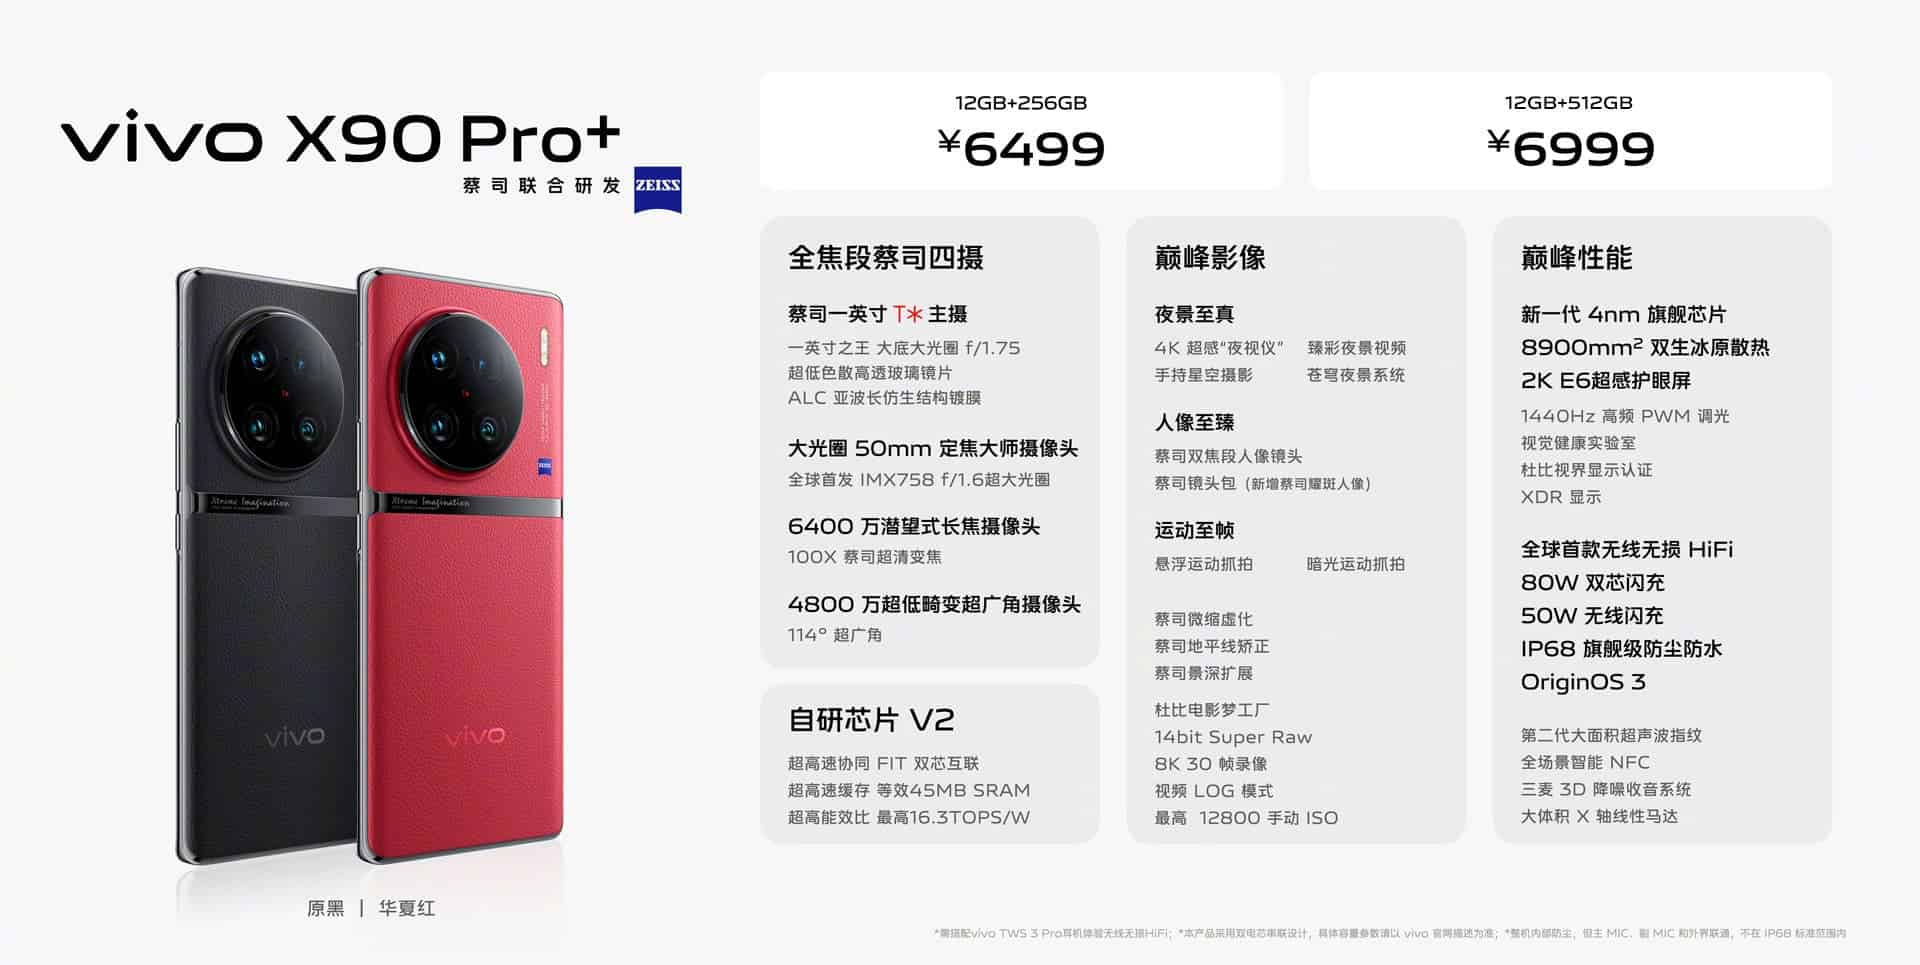 VIVO X90 Pro+ prices